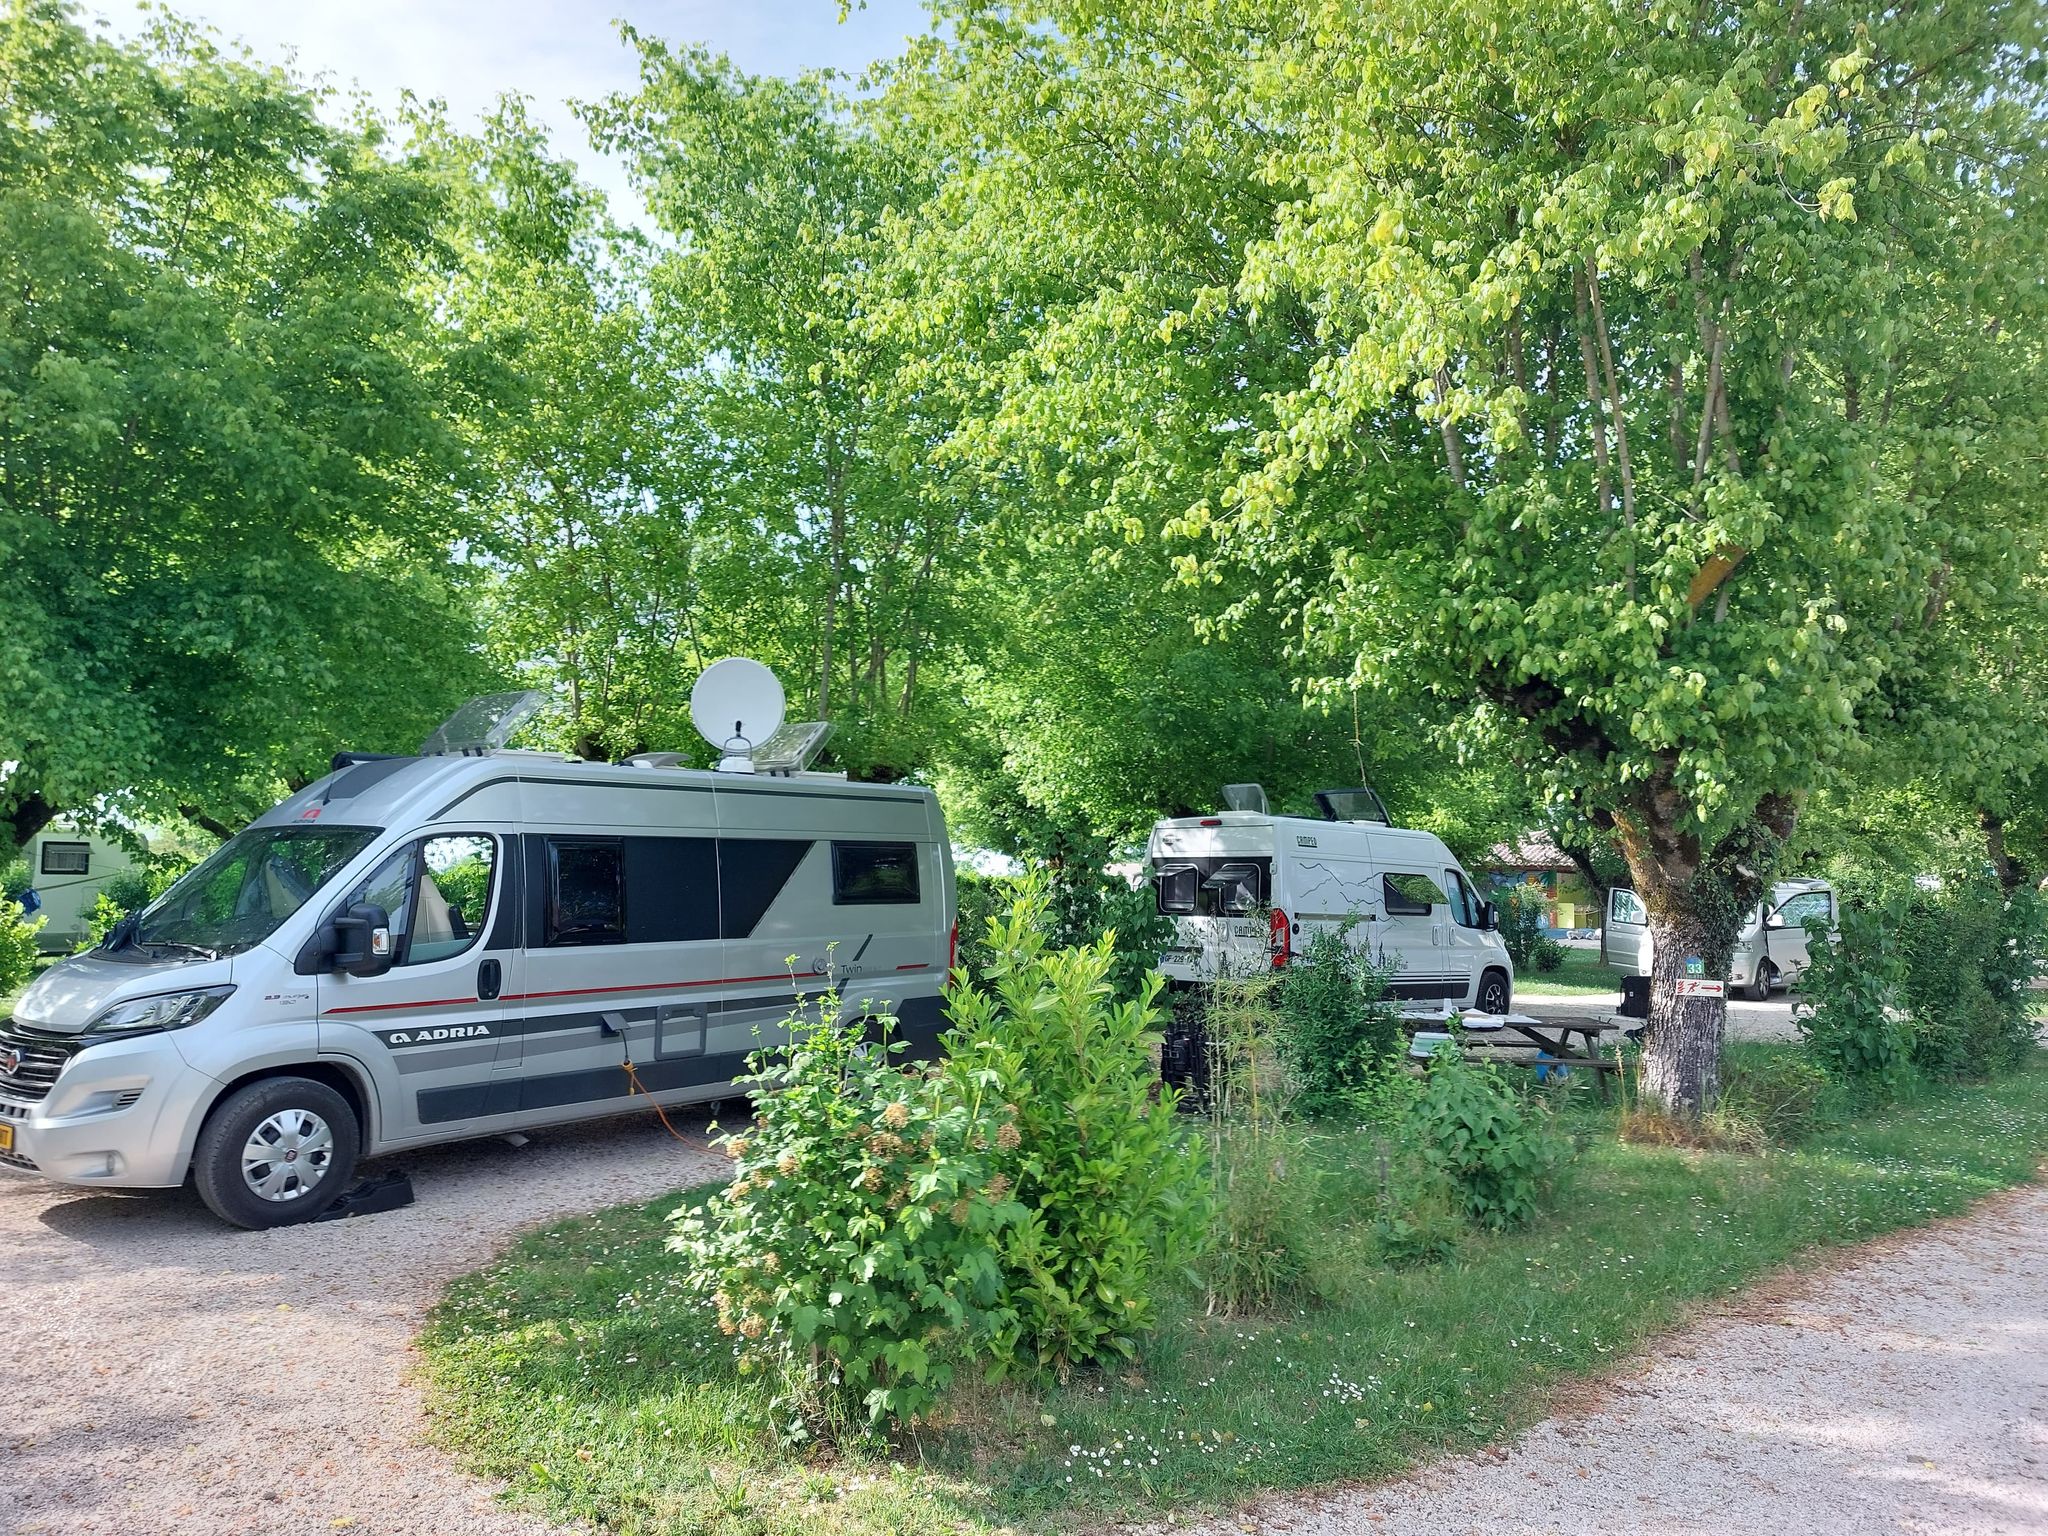 Emplacement CONFORT Semi stabilisé - Van/caravane/camping-car avec électricité